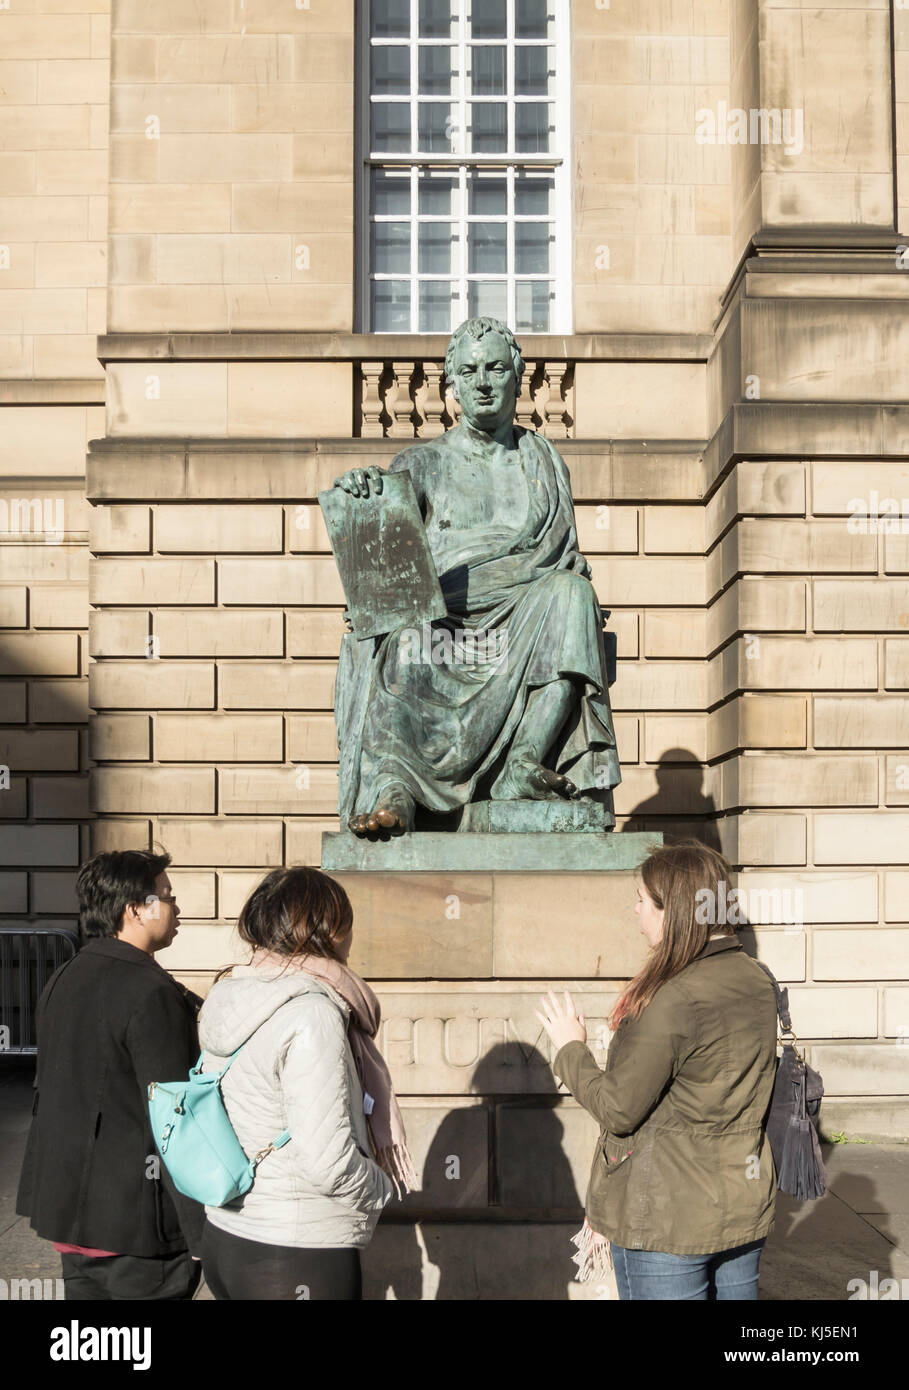 Skulptur der Philosoph David Hume auf der Royal Mile in Edinburgh, Schottland, Vereinigtes Königreich. Stockfoto